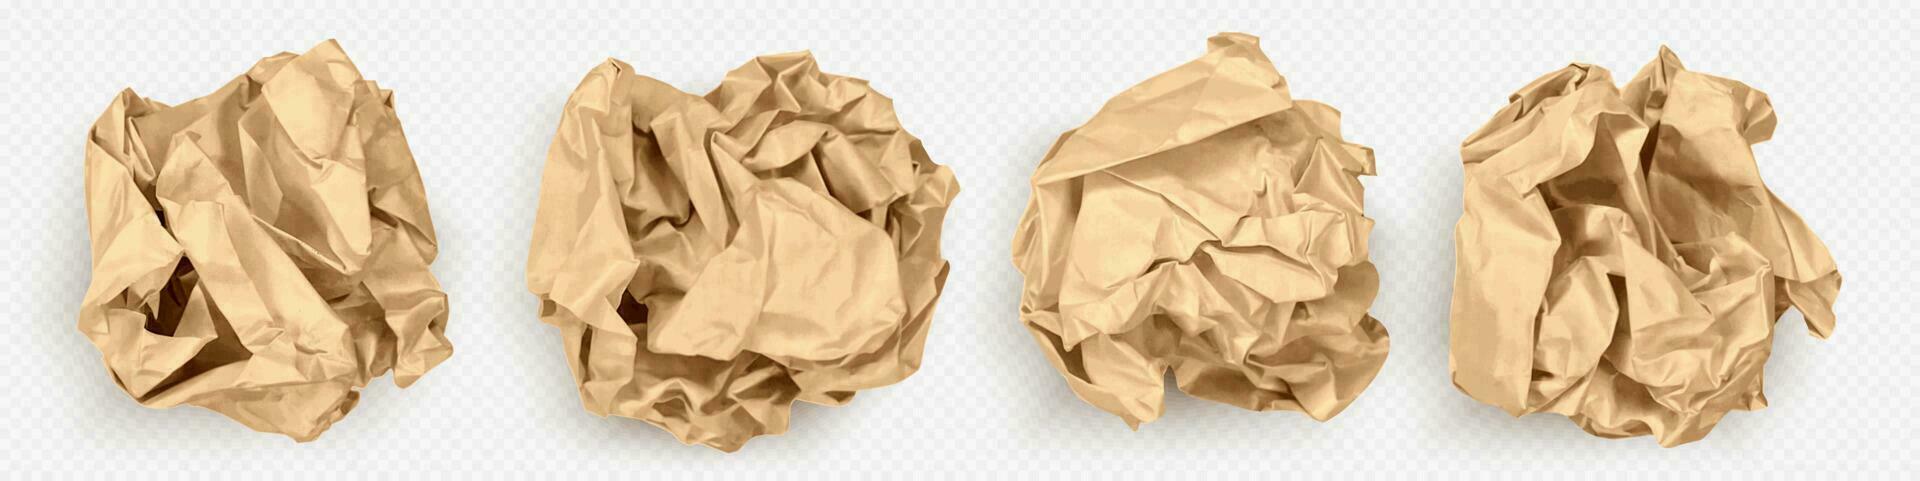 Realistic 3D set of crumpled paper balls vector